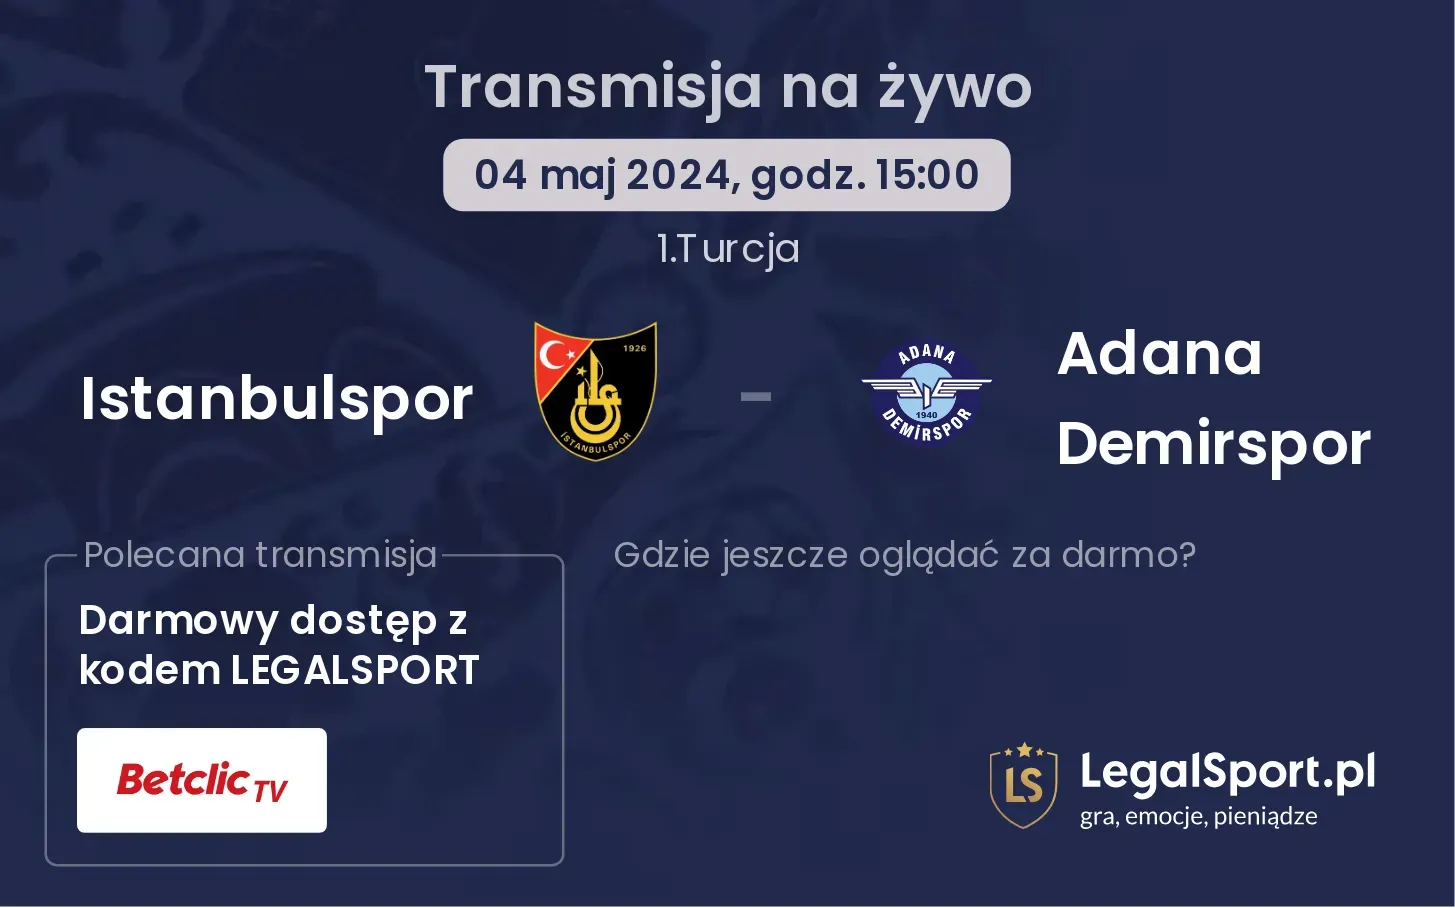 Istanbulspor - Adana Demirspor transmisja na żywo